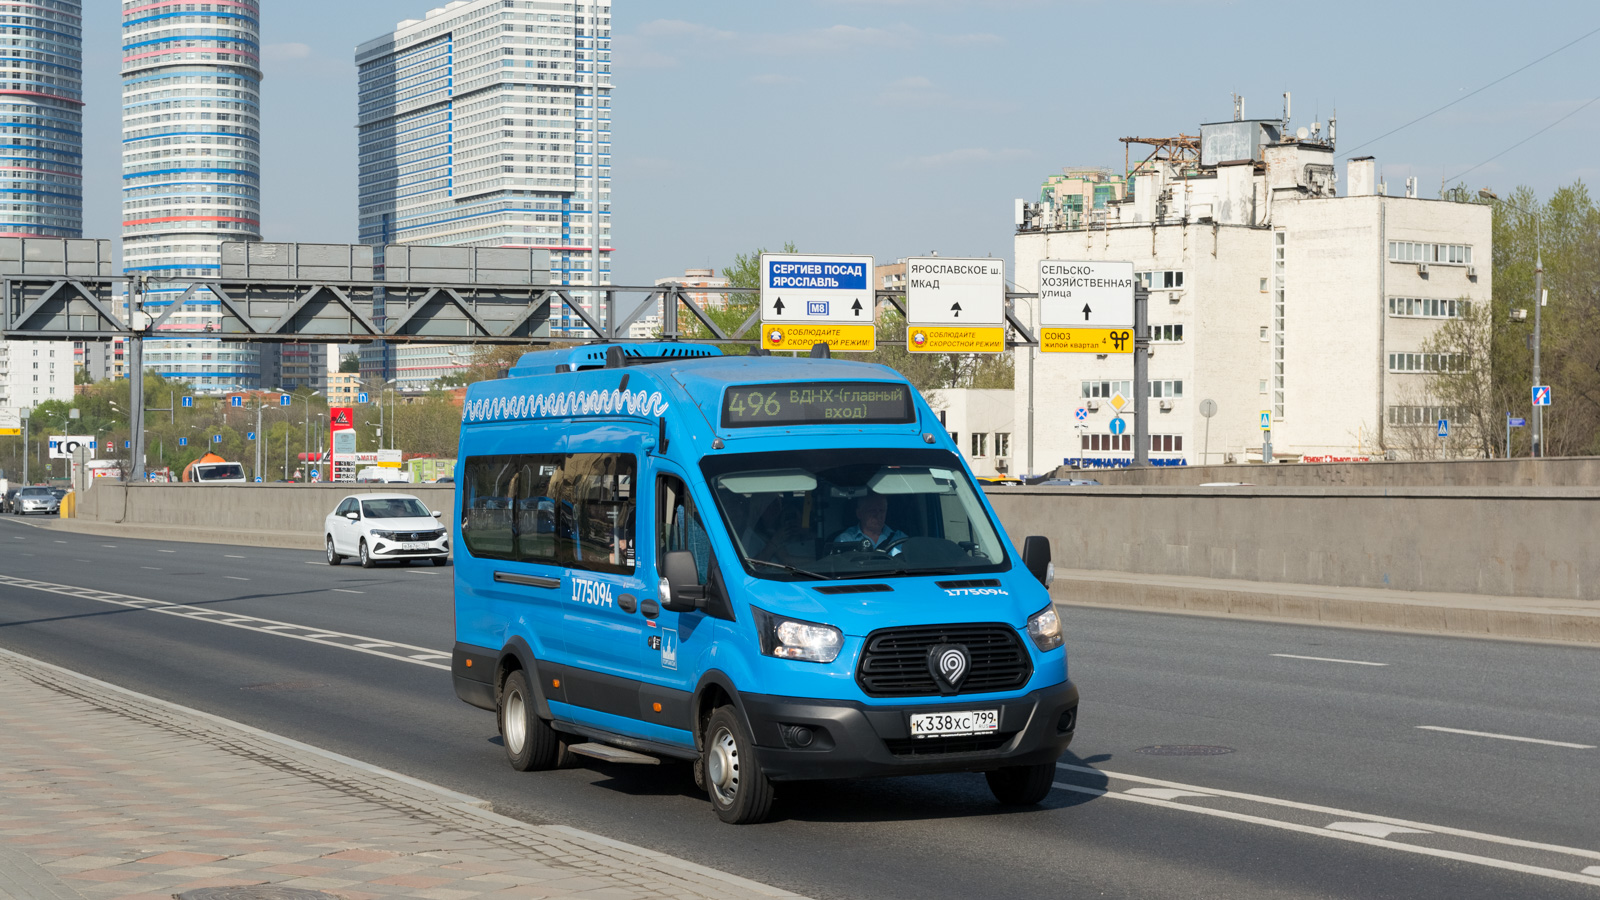 Moszkva, Nizhegorodets-222708 (Ford Transit FBD) sz.: 1775094